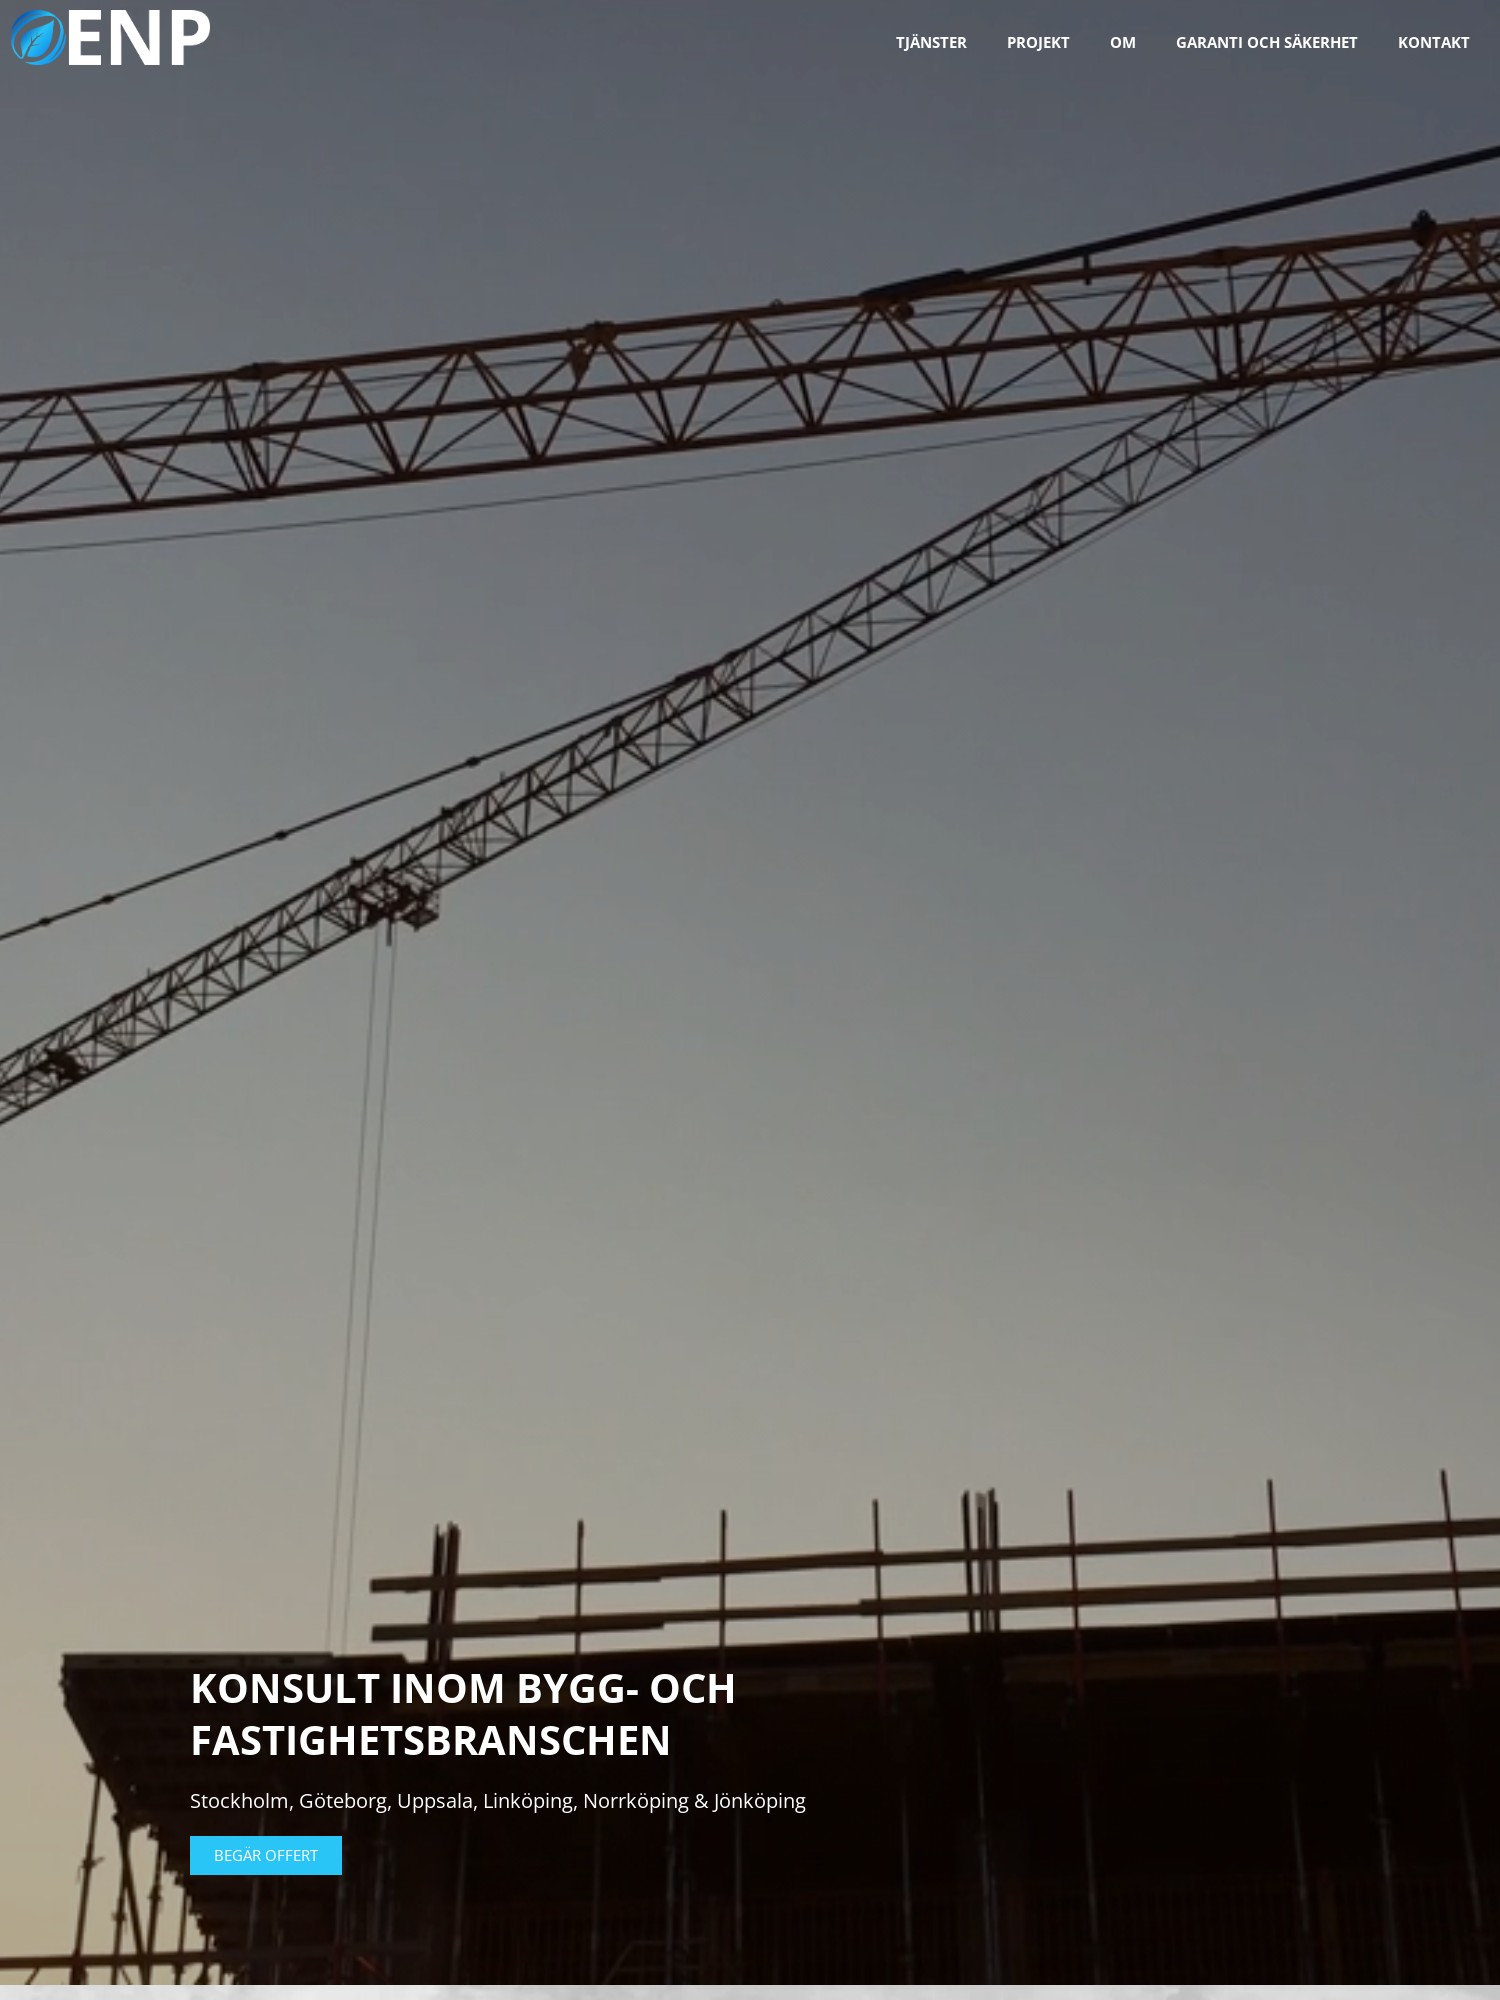 a crane over a building